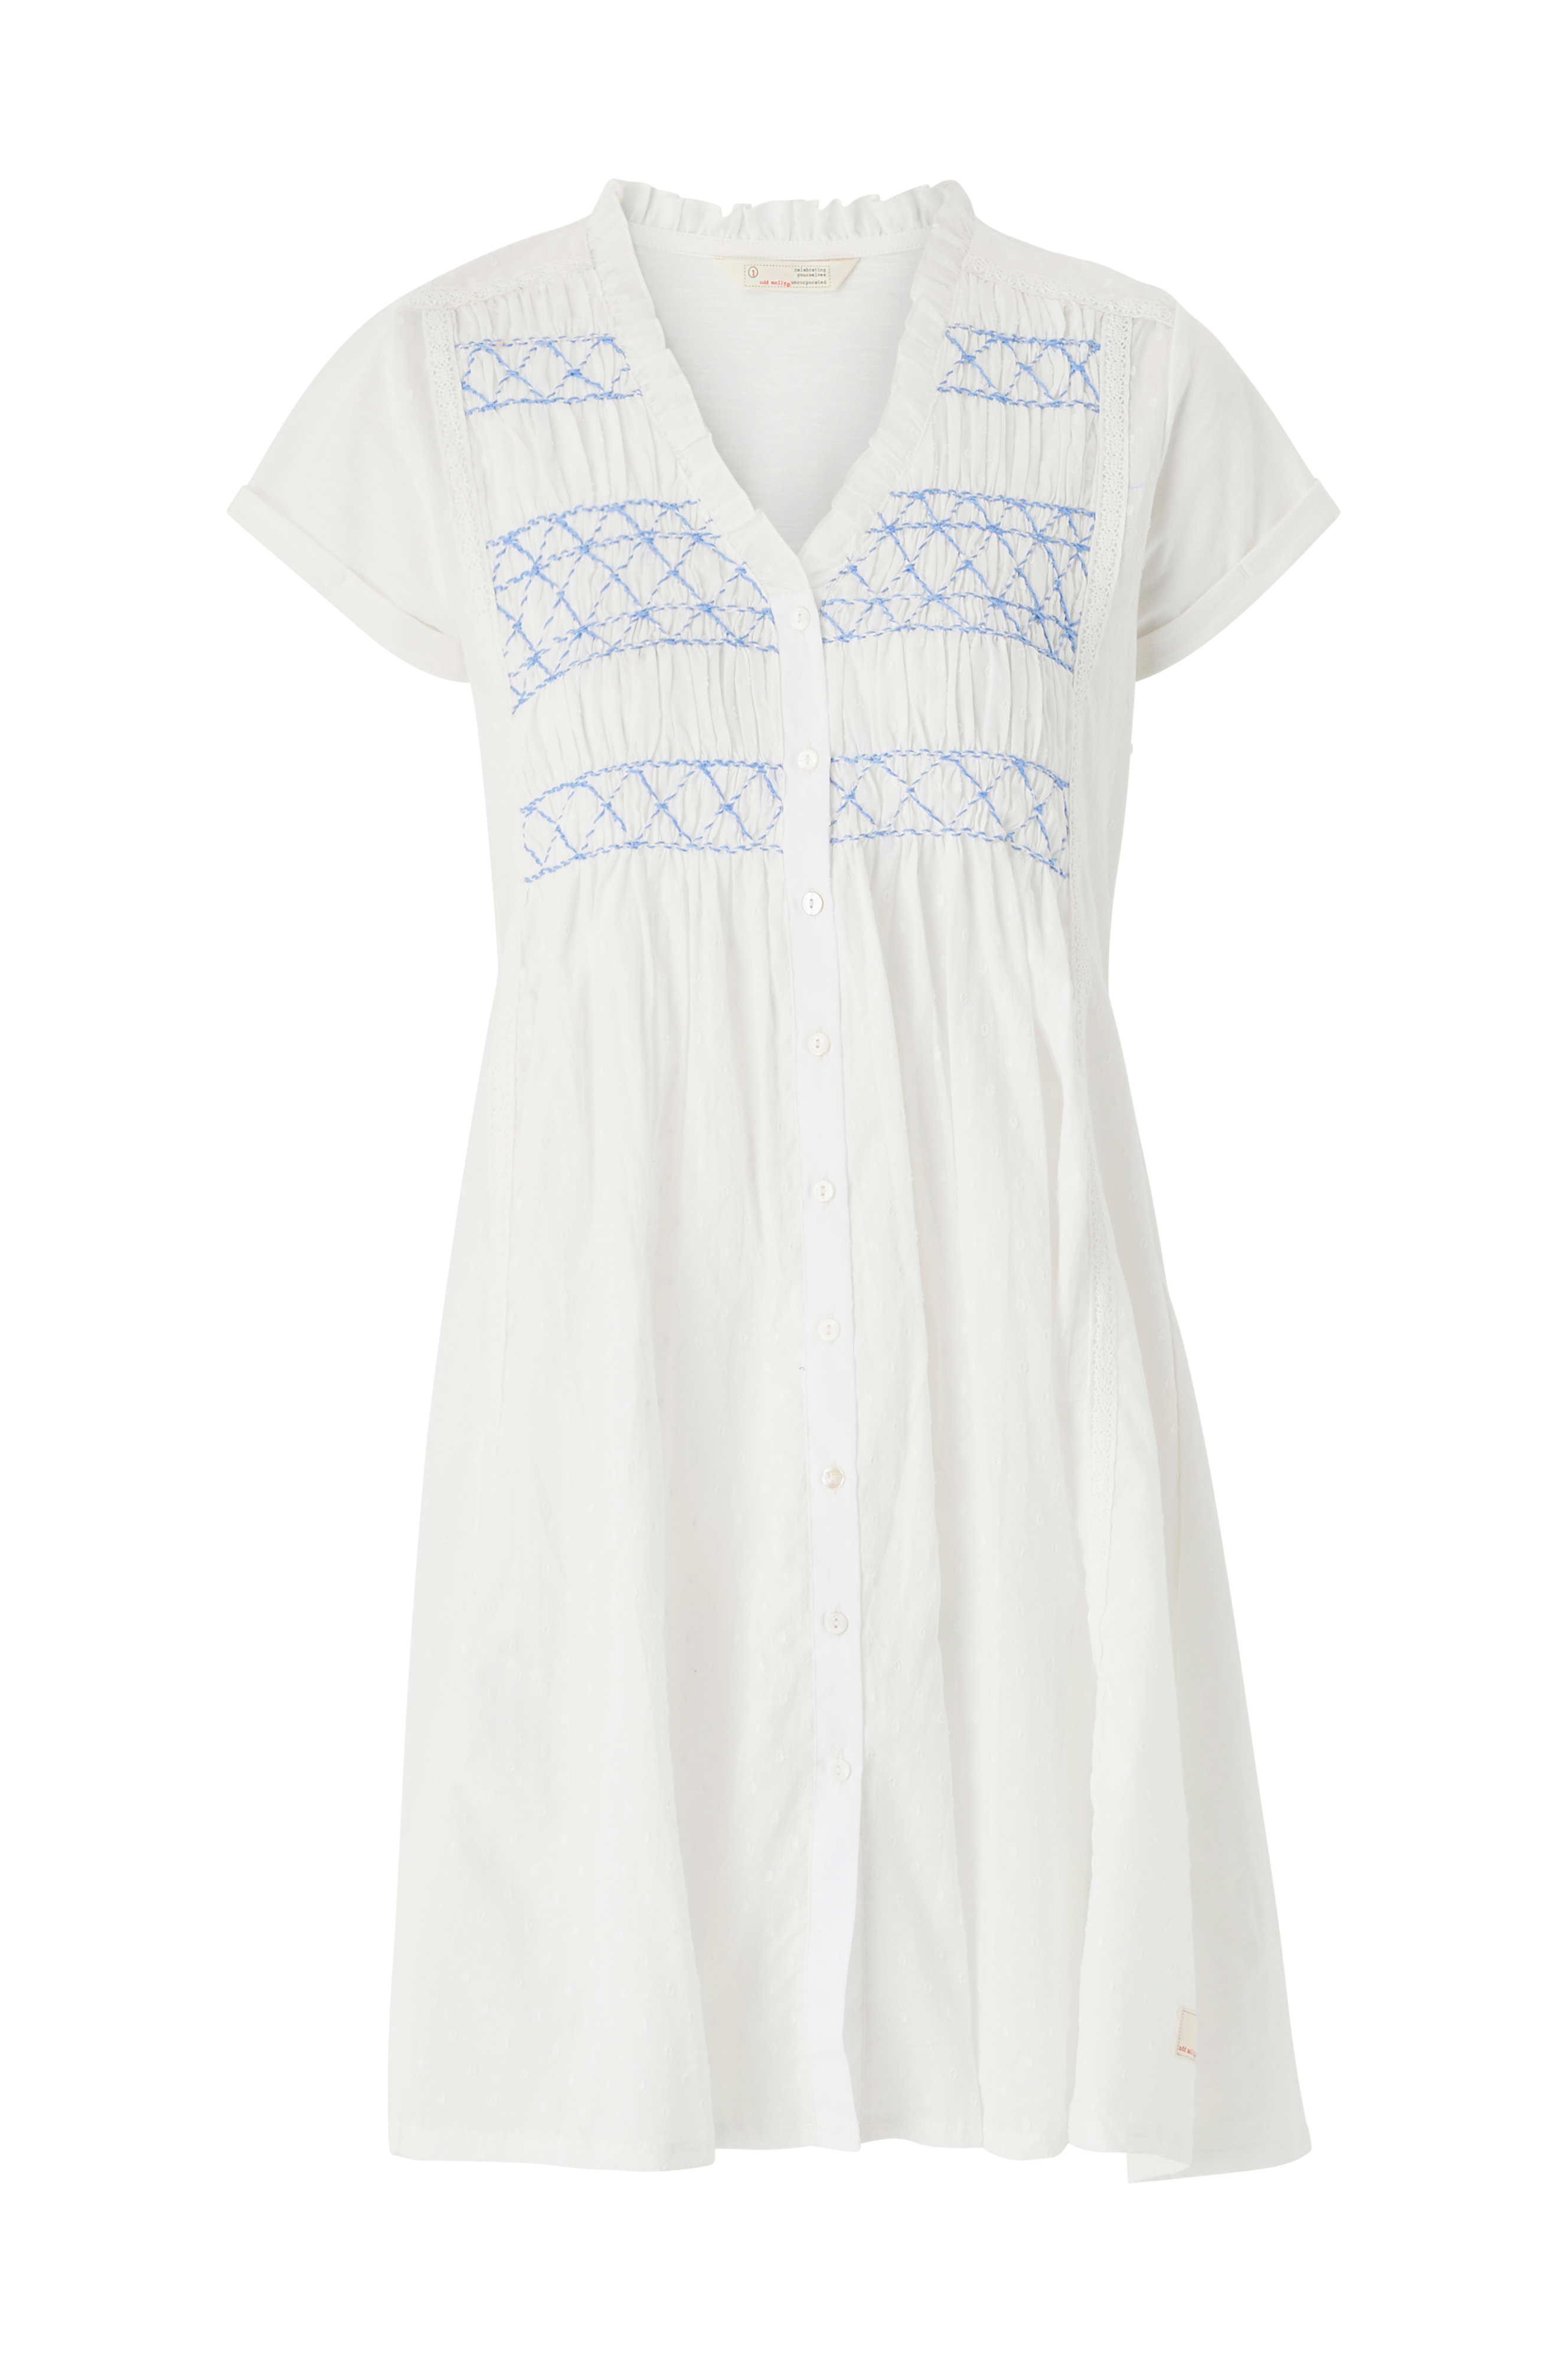 Odd Molly Hilma Dress - Hvid - Korte kjoler Ellos.dk